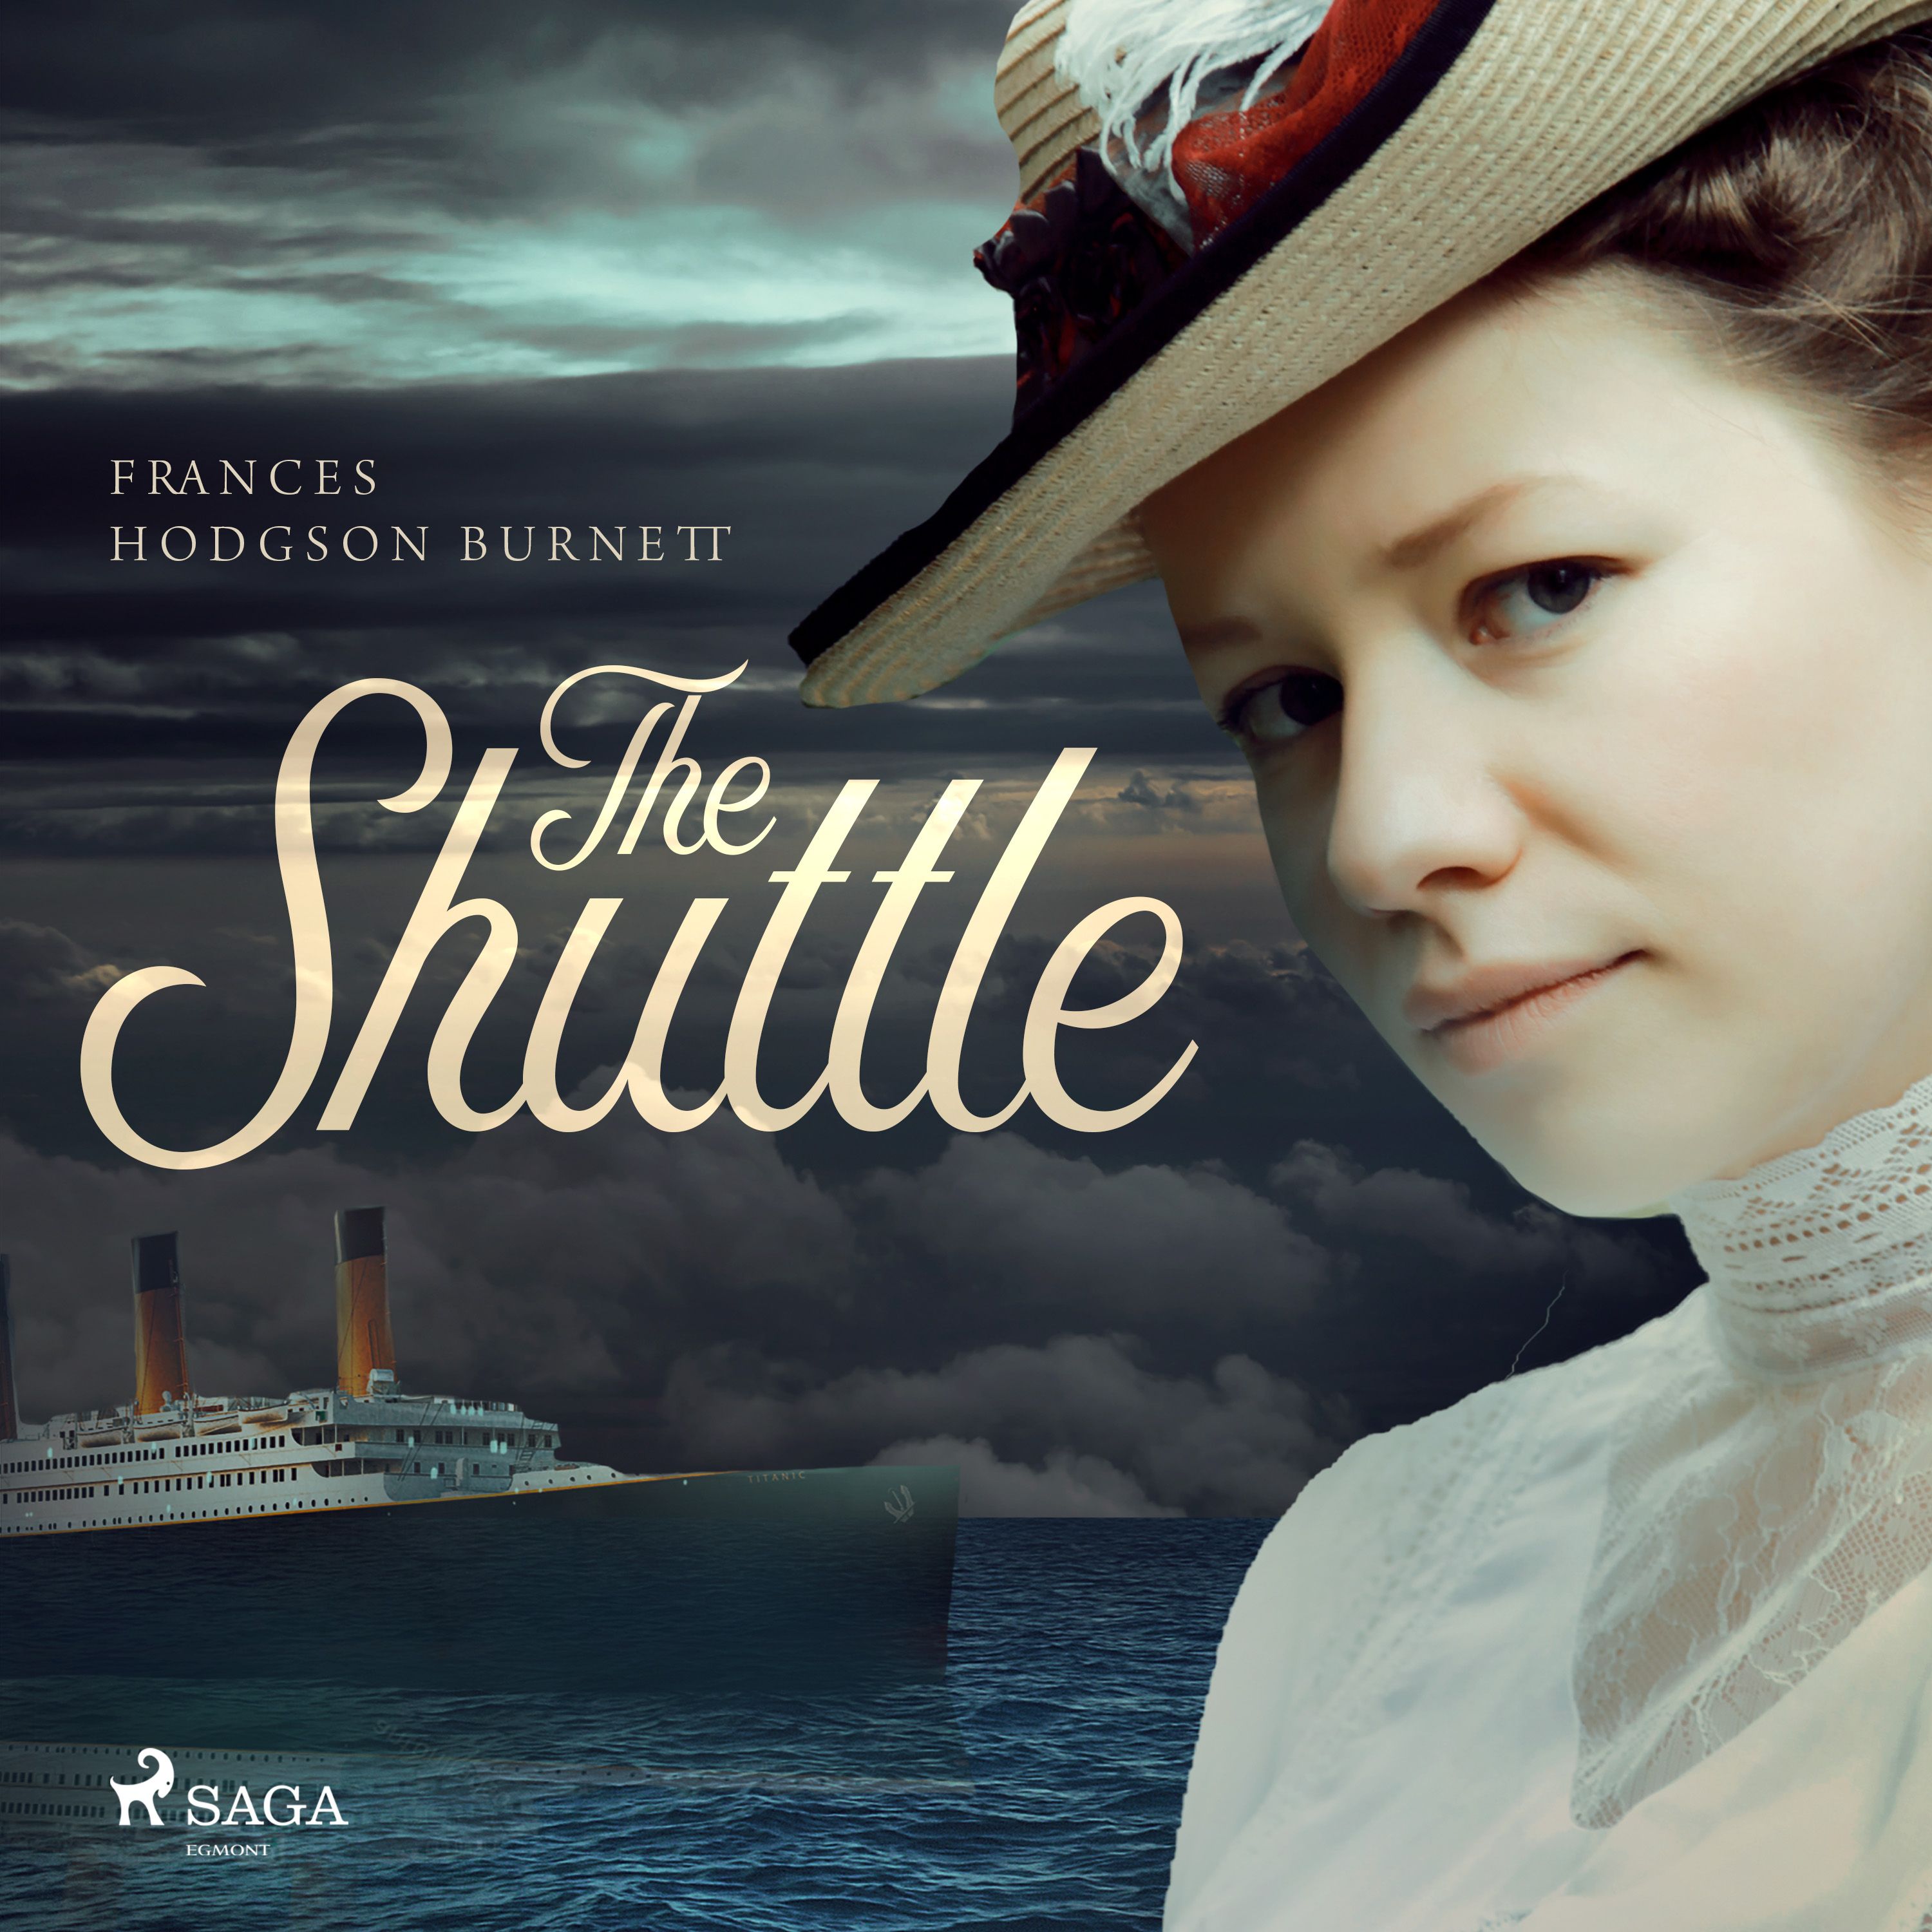 The Shuttle, audiobook by Frances Hodgson Burnett